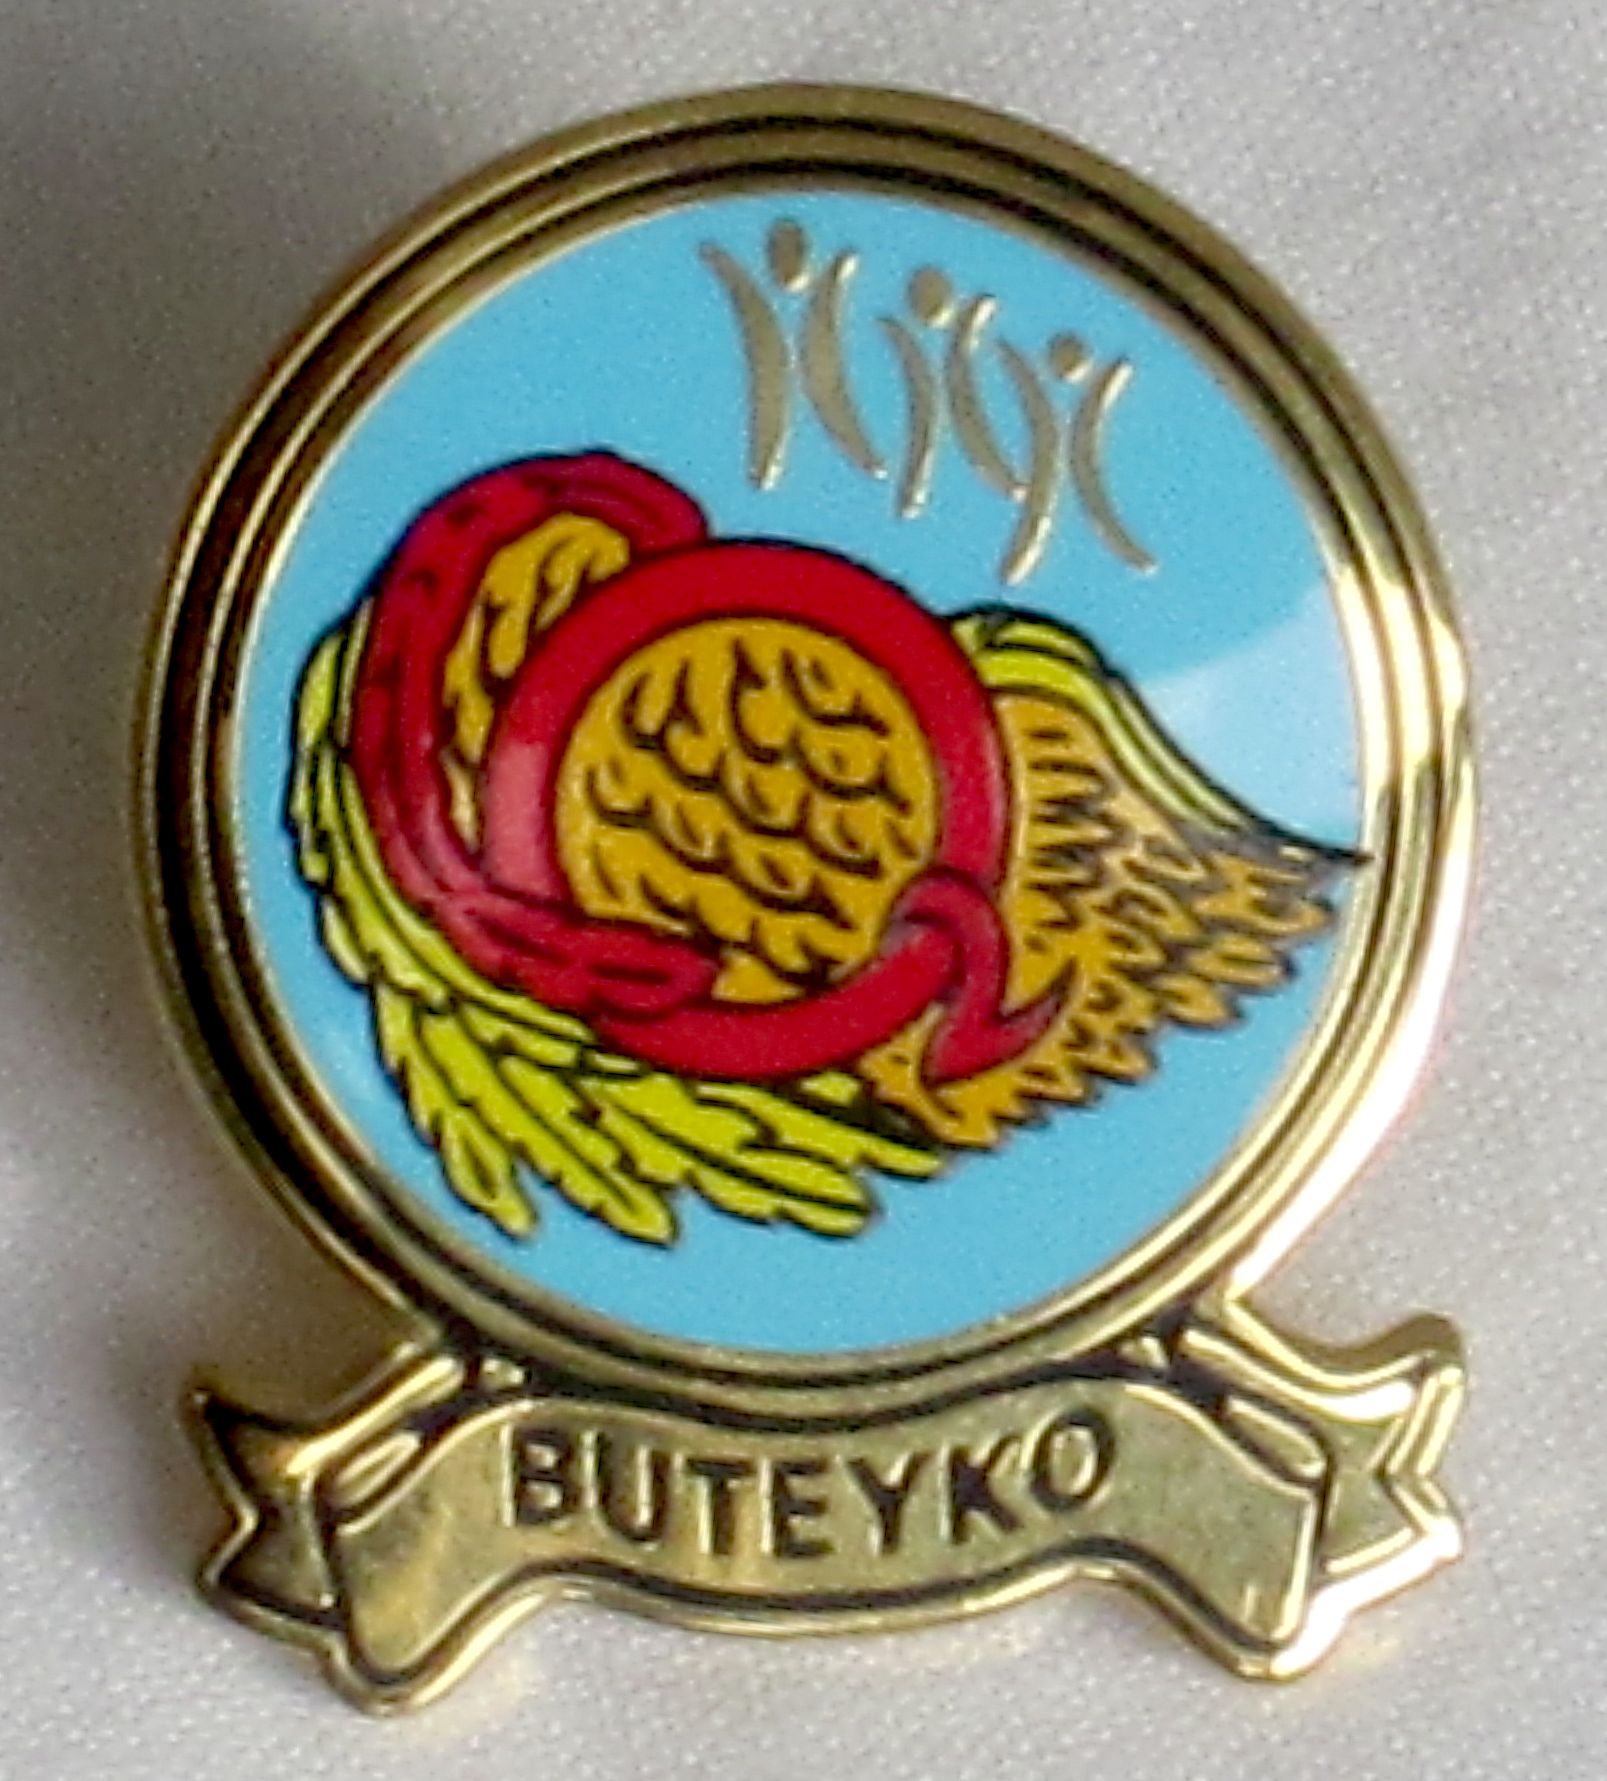 Buteyko pin